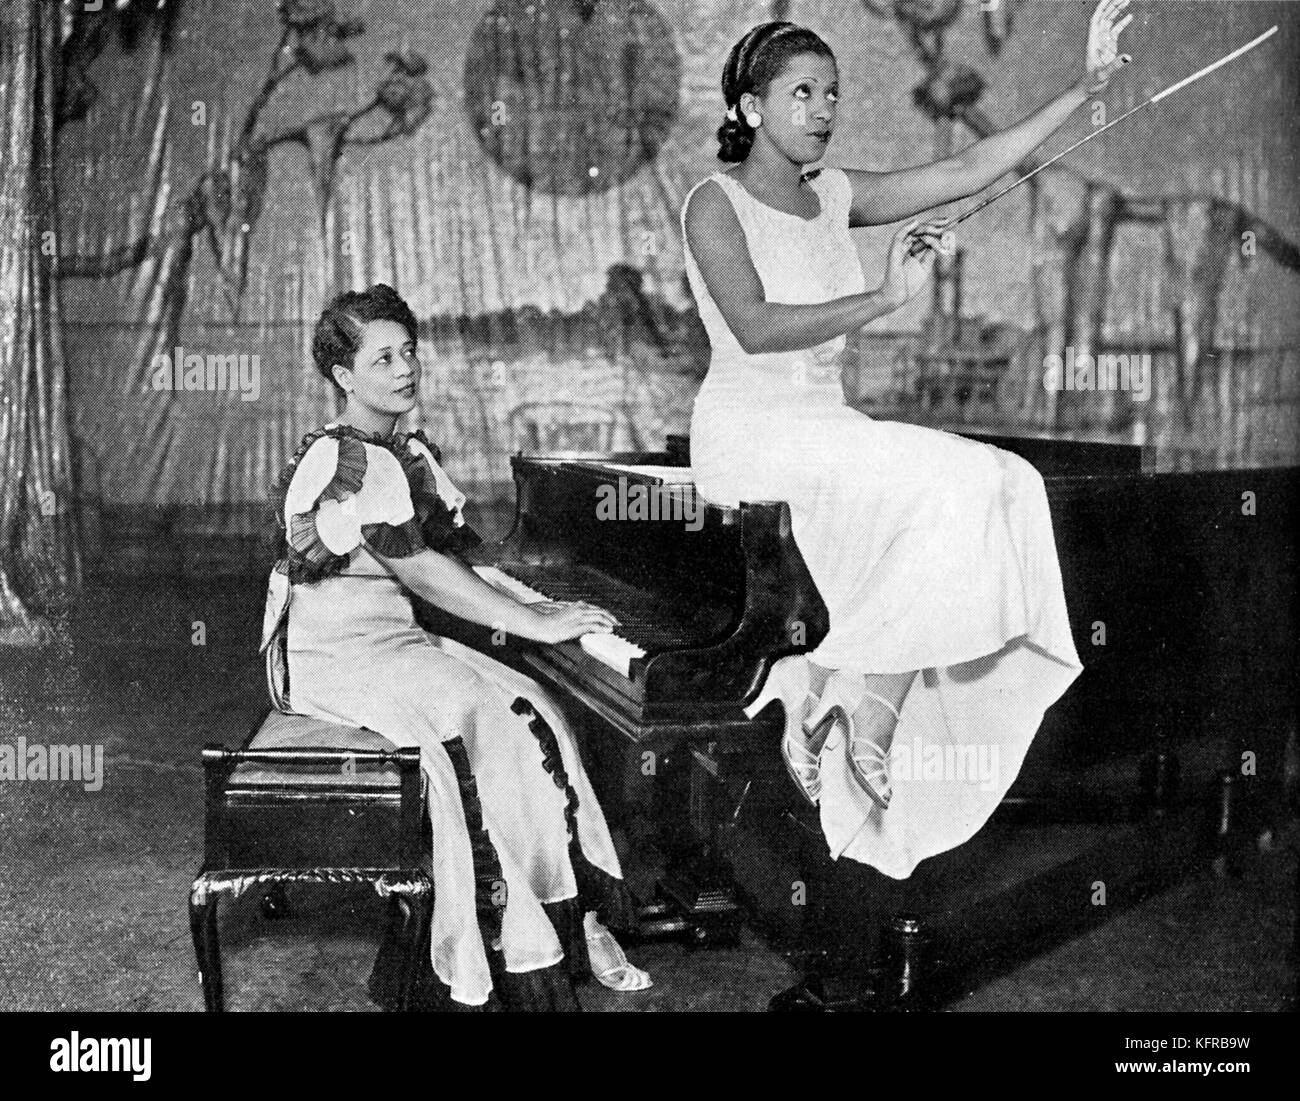 Valaida Snow (2 juin 1904 - 30 mai 1956) , chant George Gershwin's 'Rhapsody in Blue' avec de Lloyd Mackey accompagne au piano, Lew Leslie's 'épaulettes de 1935", au London Coliseum, 1935. Banque D'Images